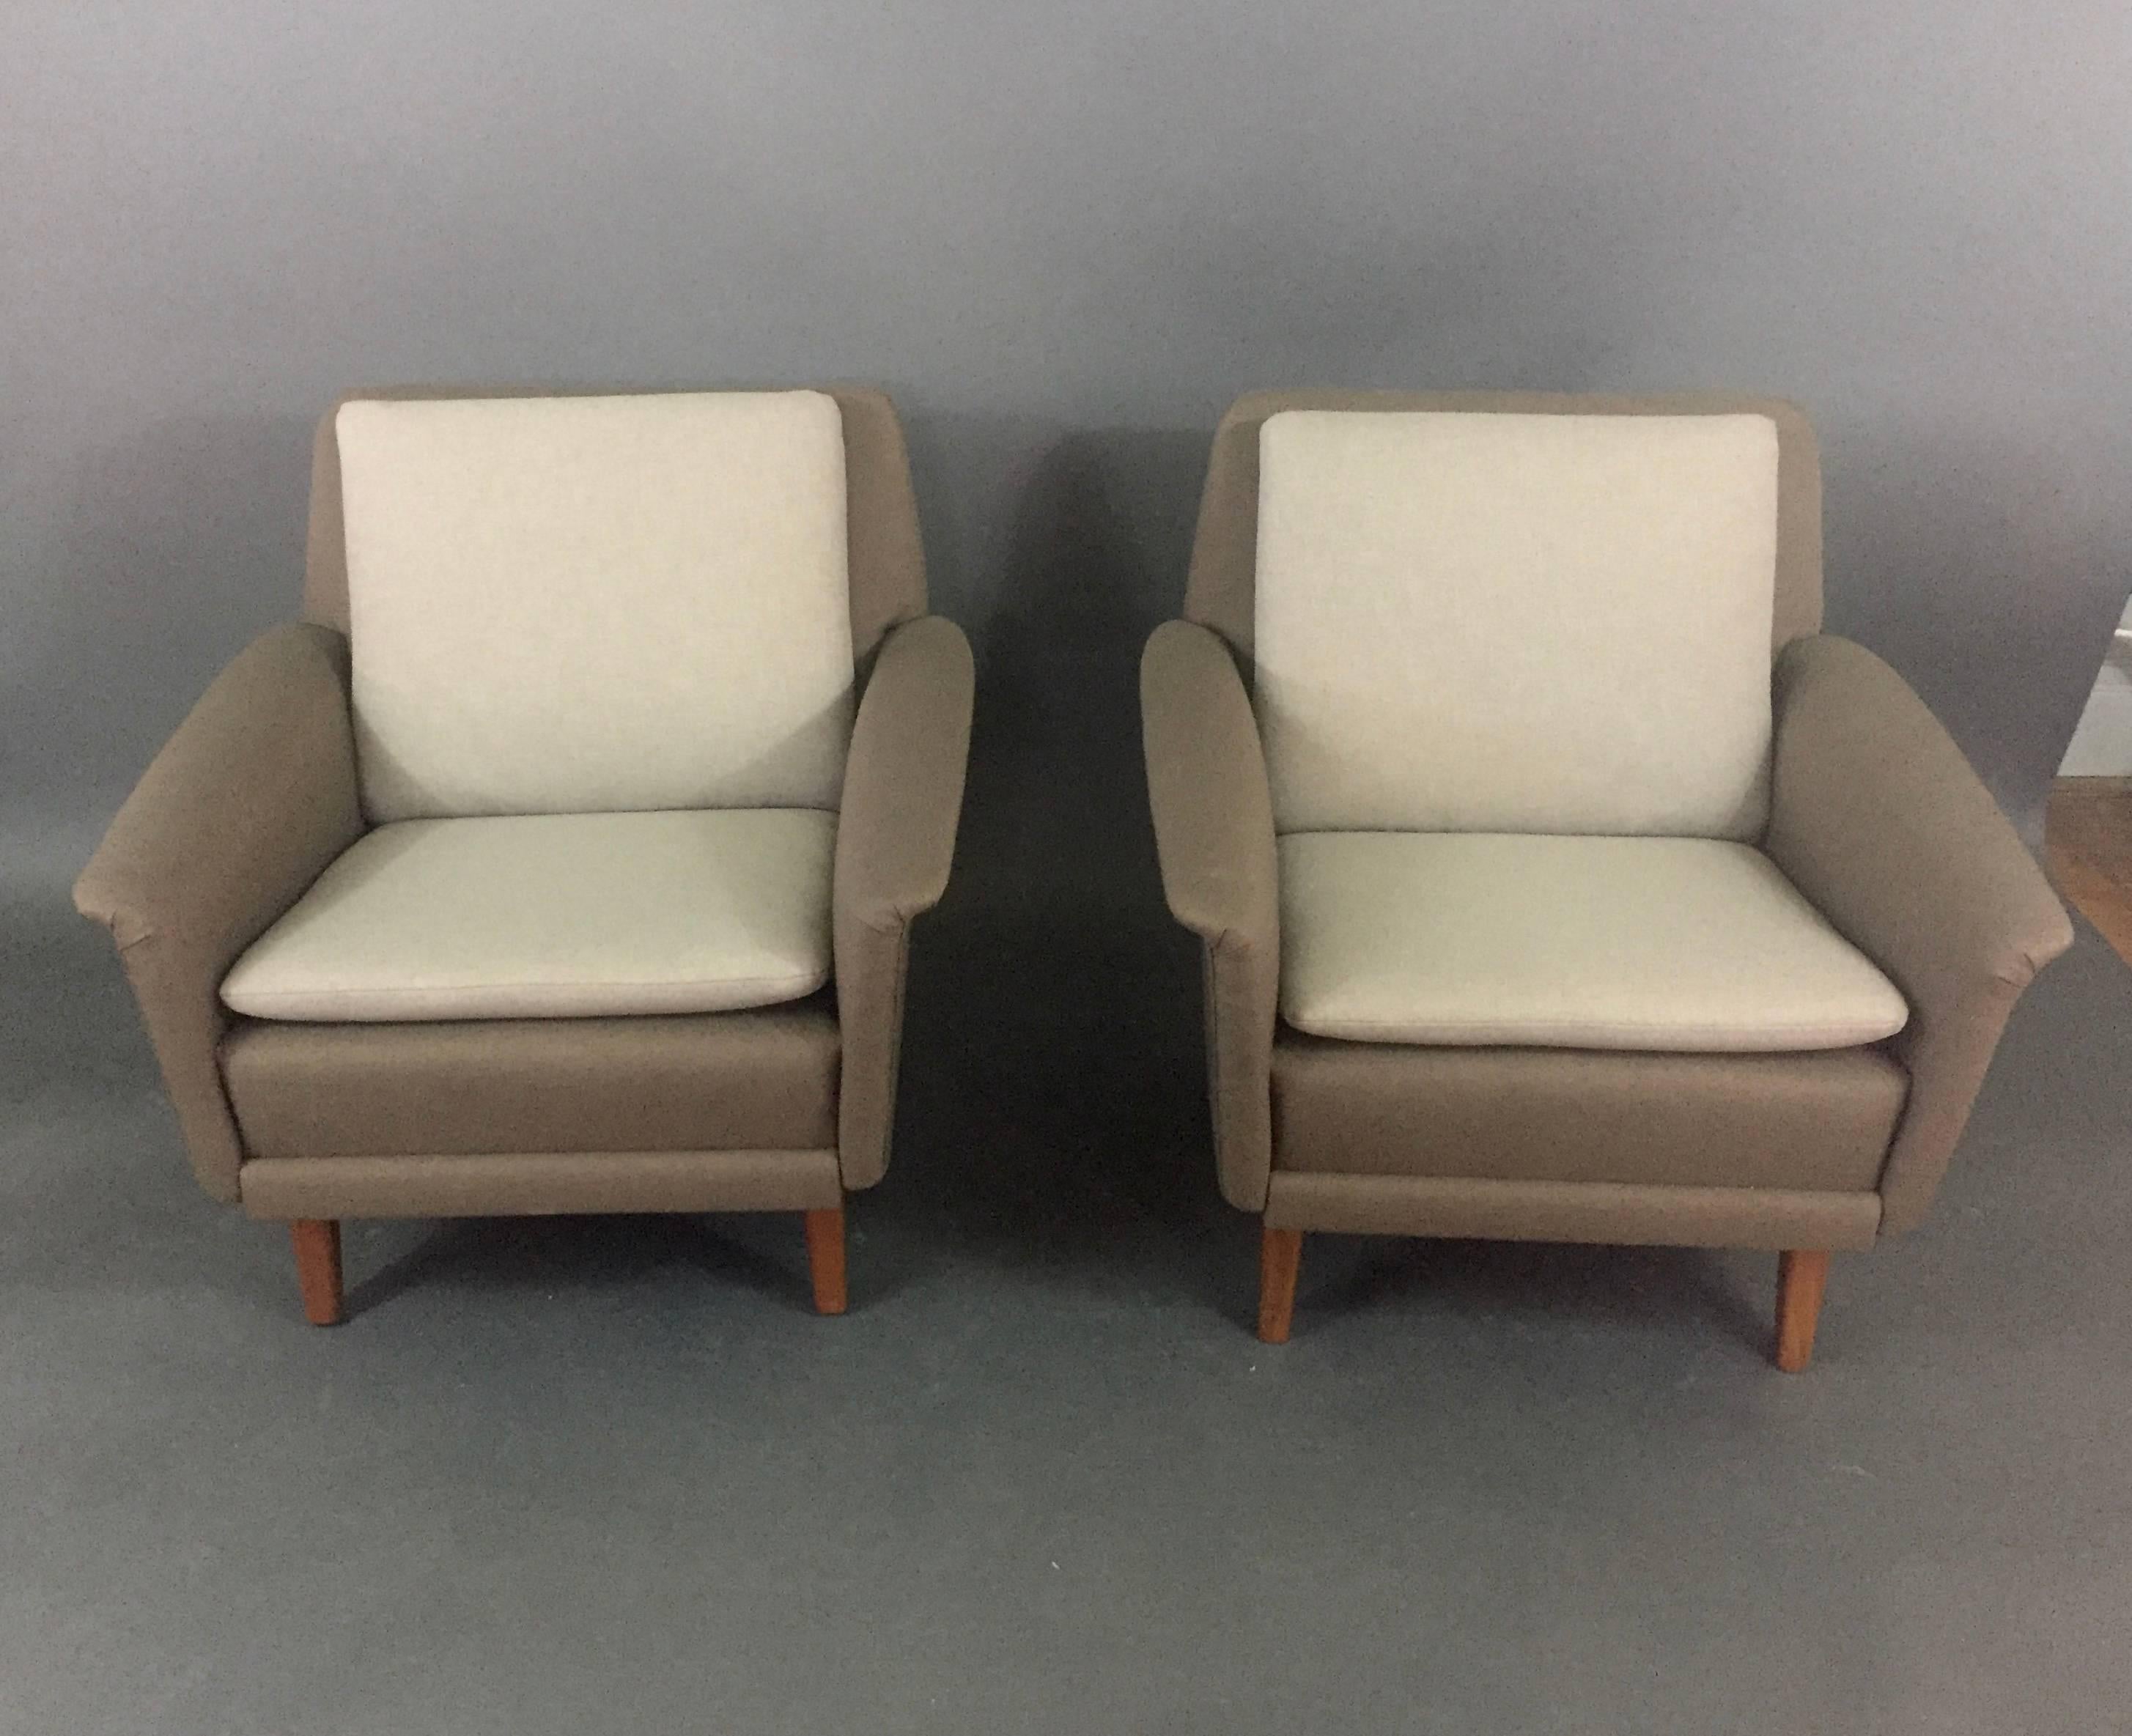 Scandinavian Modern Pair of Folke Ohlsson Lounge Chairs, Denmark, 1960s For Sale